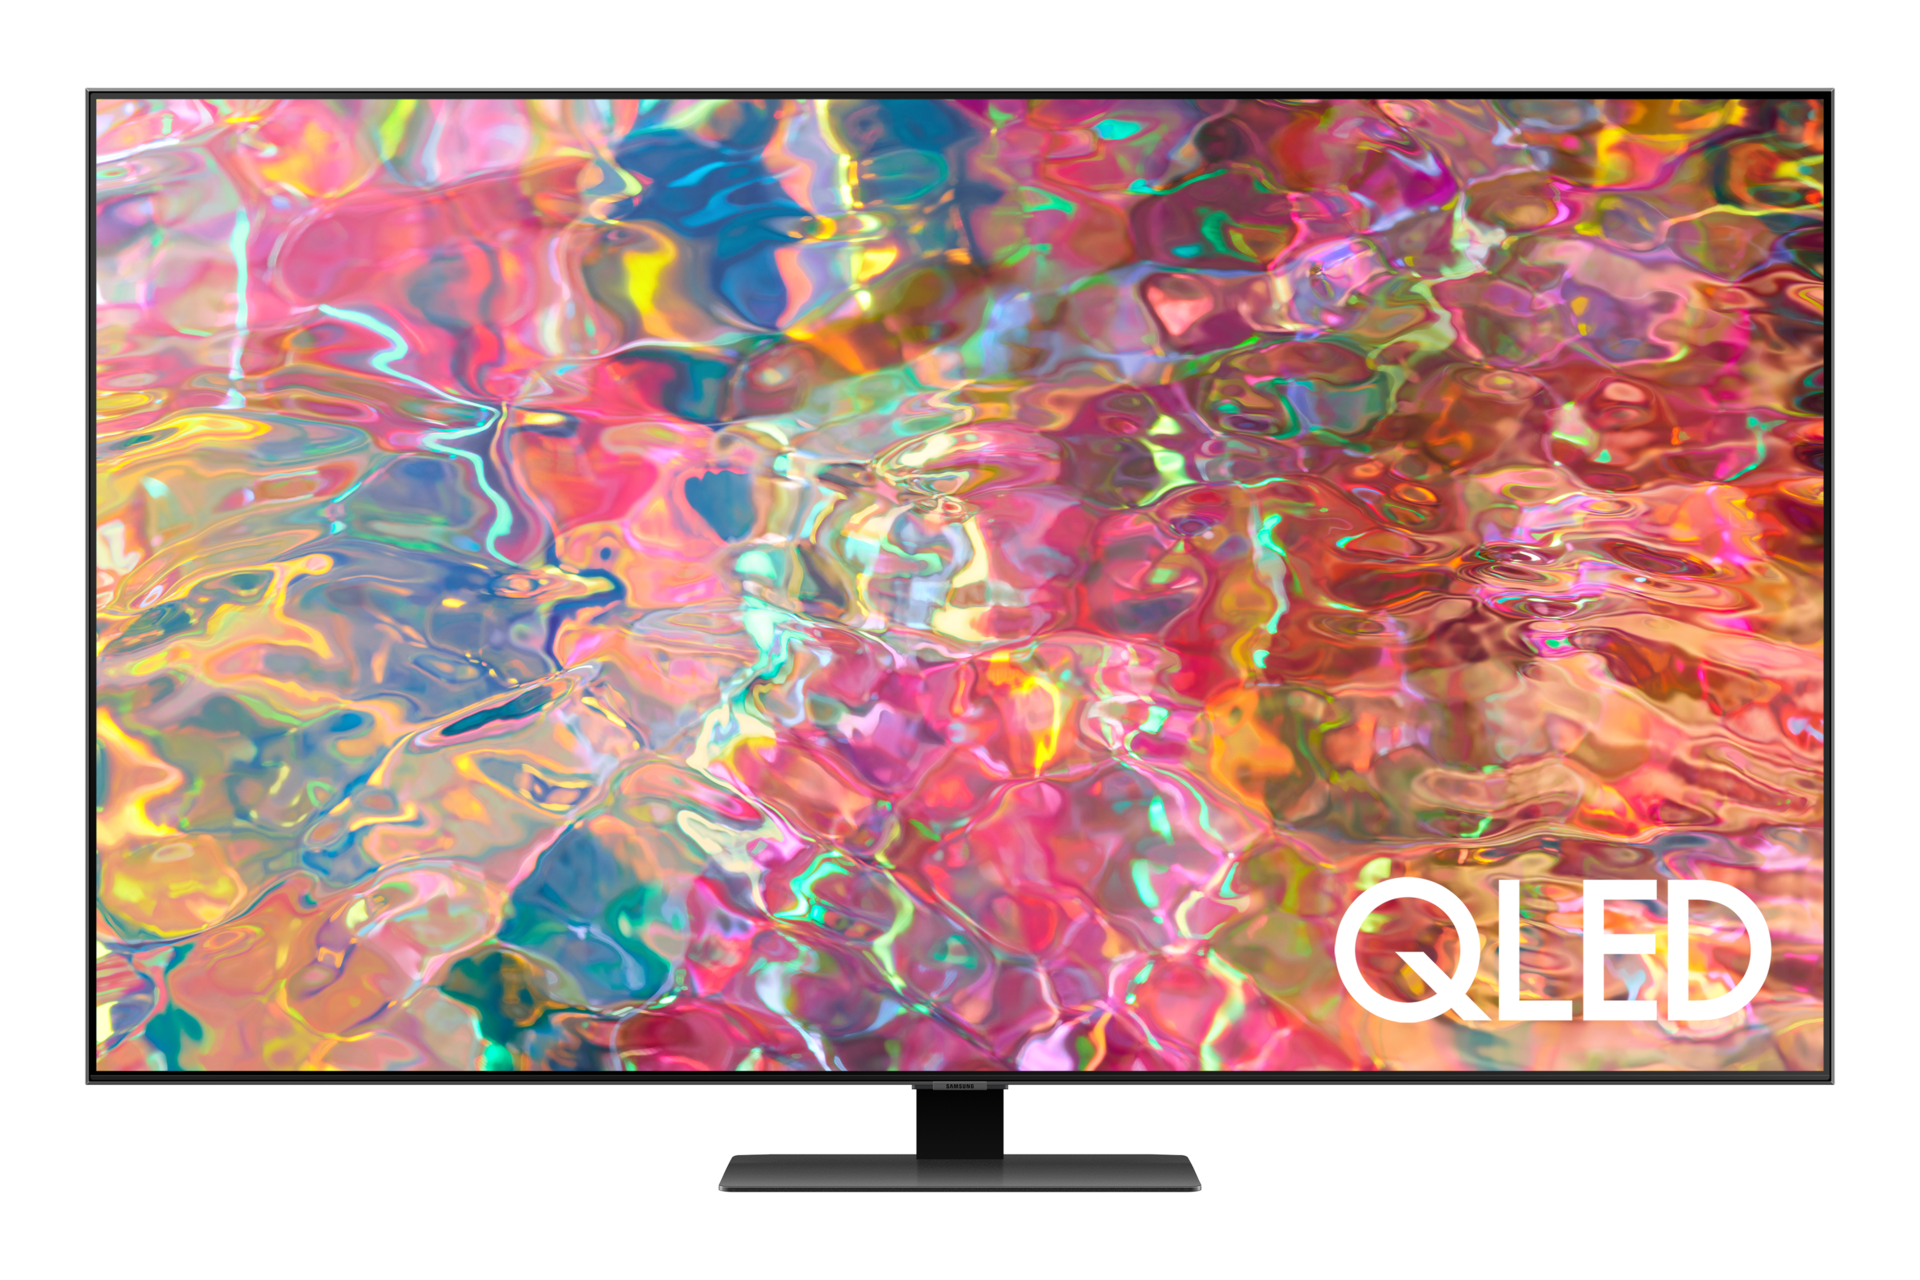 ดูราคา Samsung QLED 75 นิ้วที่มี Direct Full Array คุมแสงให้รายละเอียดสมจริง Dolby Atmos ให้เสียงรอบทิศทางเหมือนอยู่ในเหตุการณ์. หน้าจอ Q80B QLED 75 นิ้ว สี Silver ที่มีคำว่า QLED อยู่ด้านล่าง